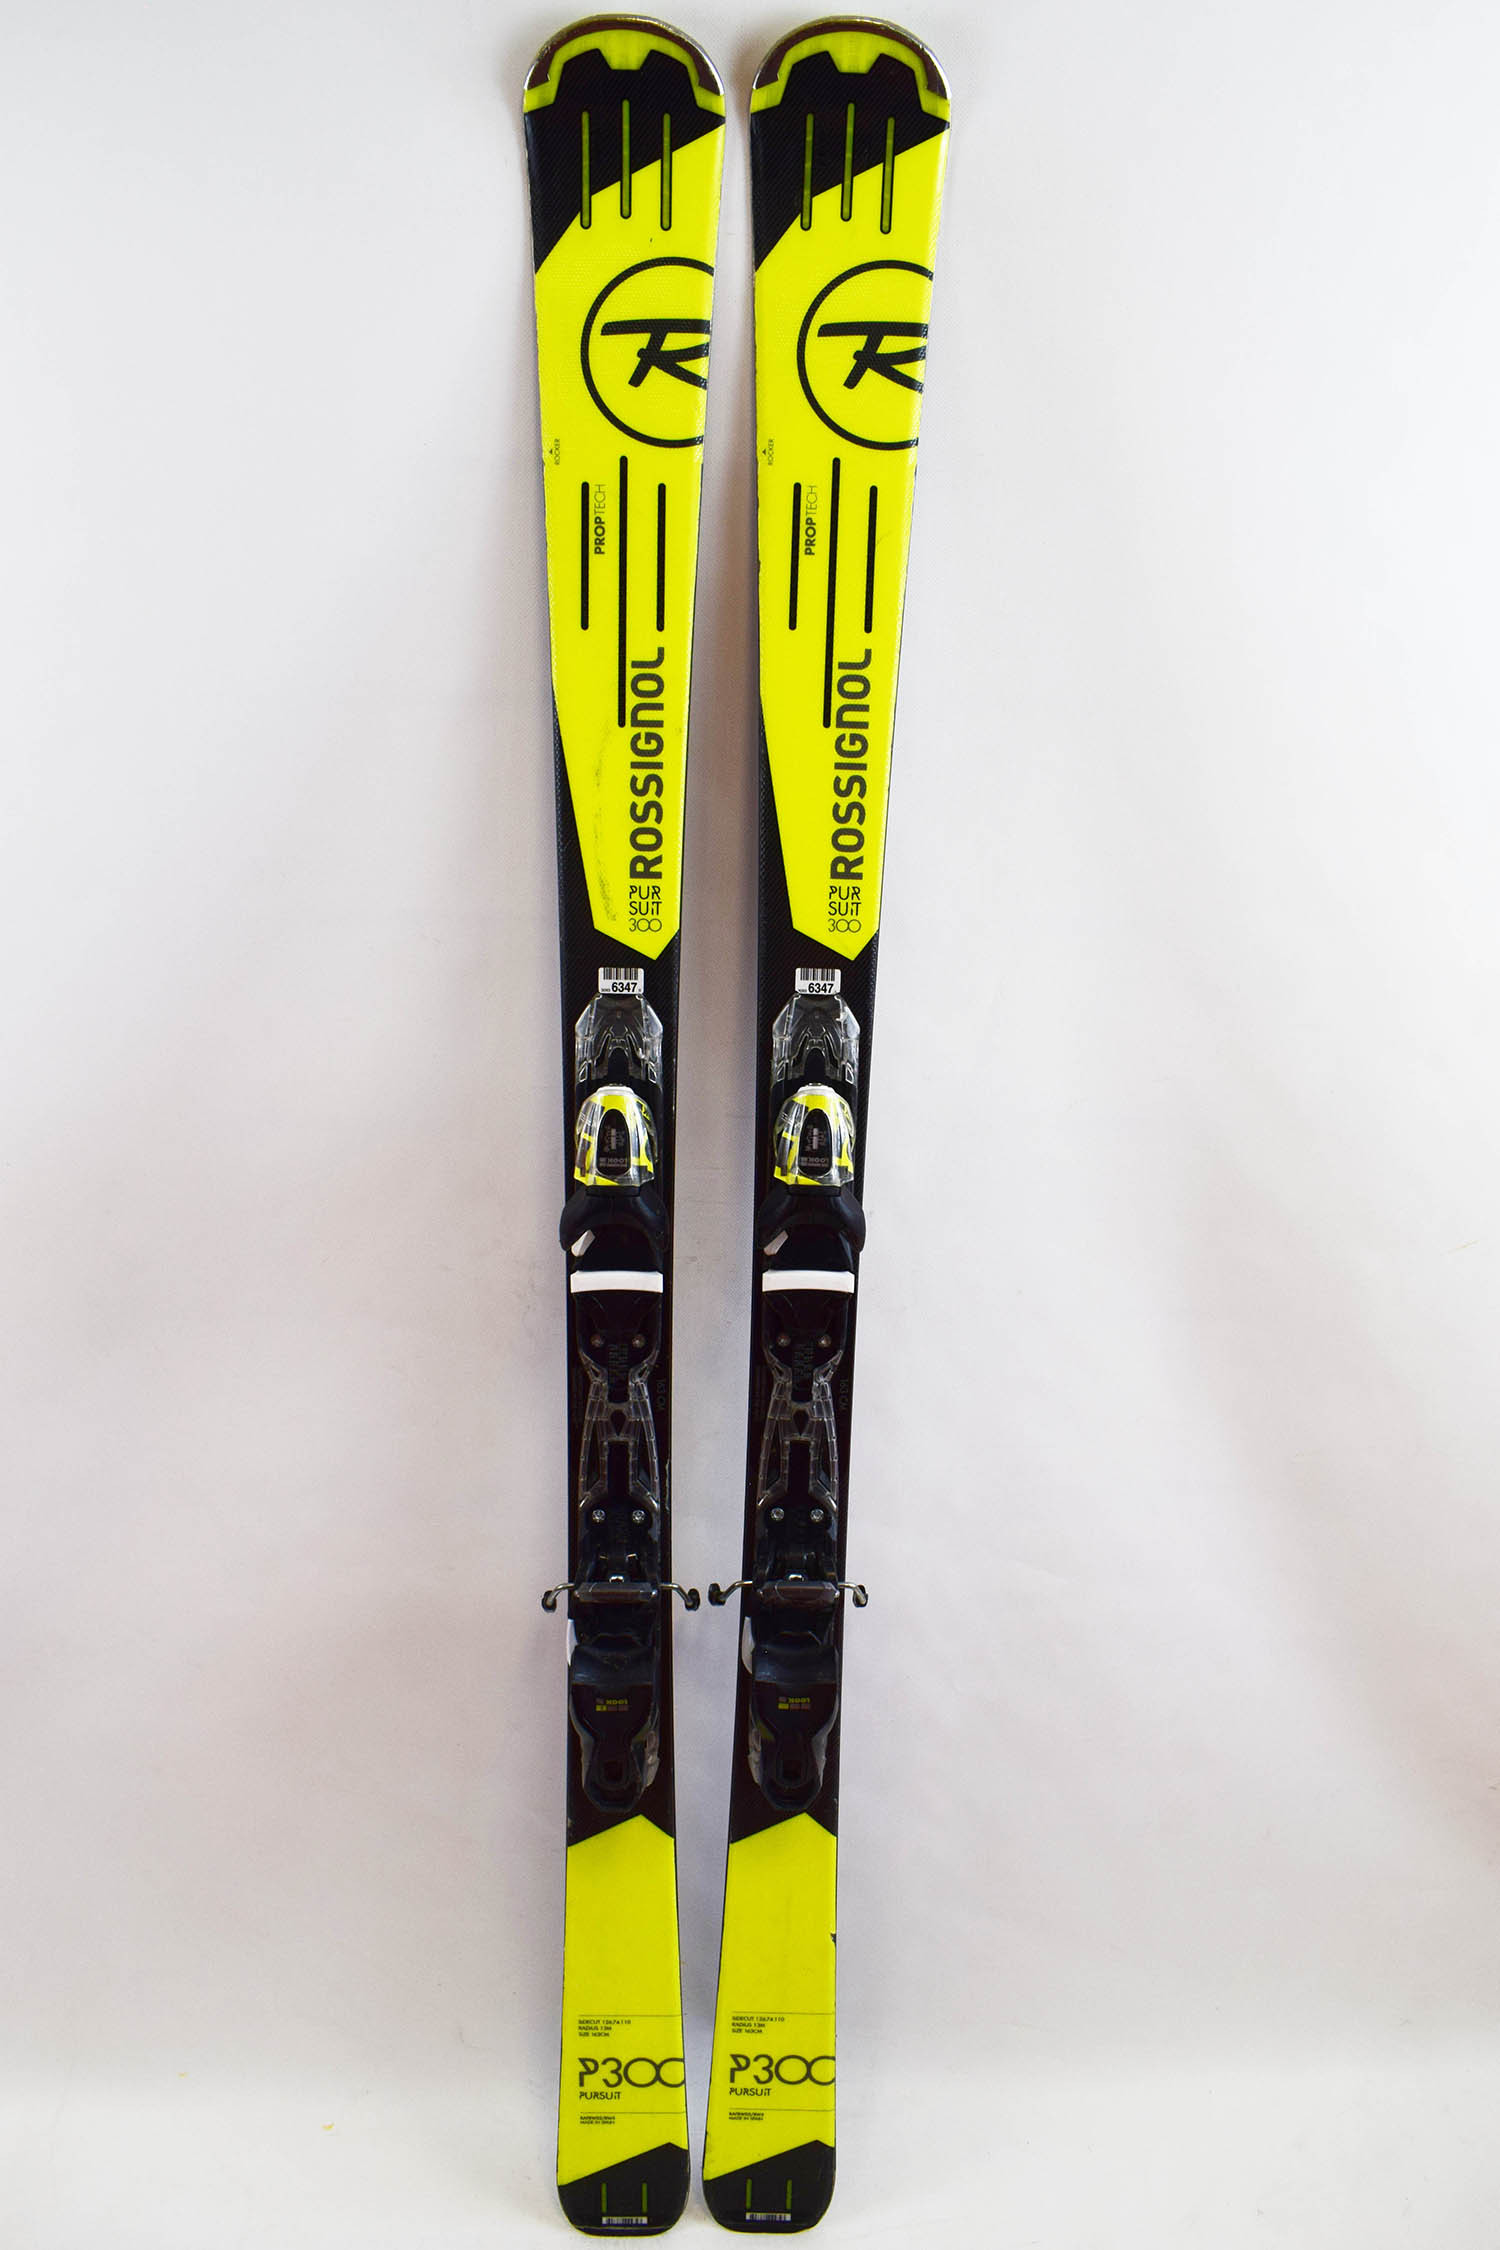 bindings Ski Salomon XDR 84 Ti occasion 